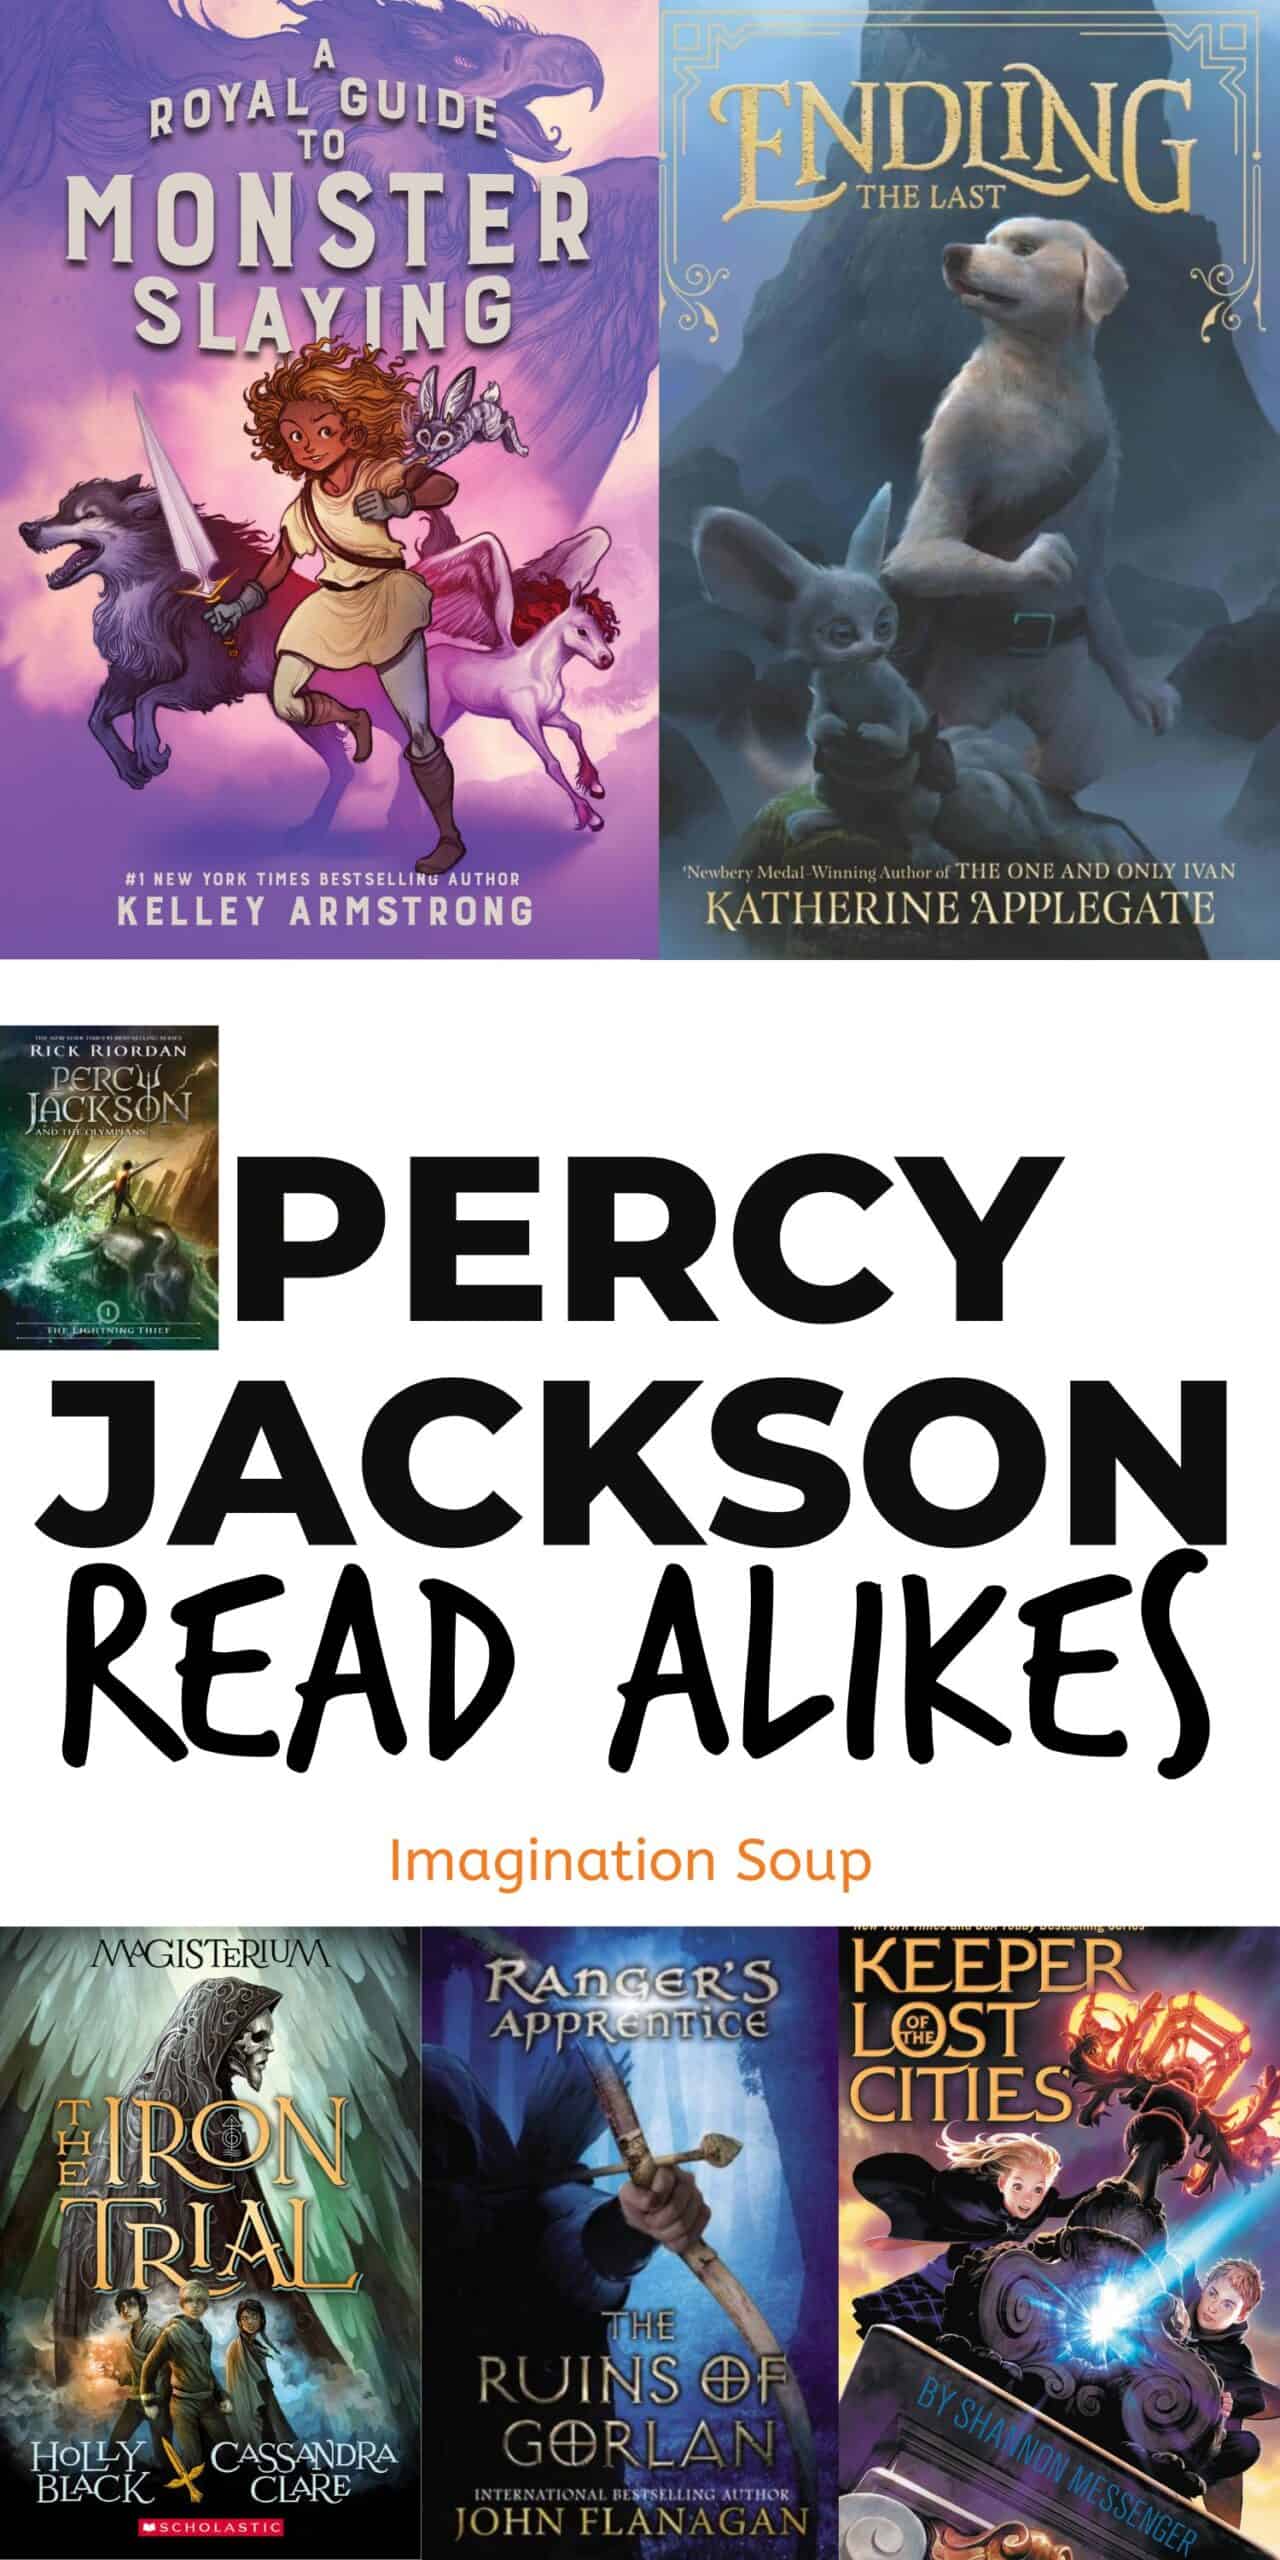 Percy Jackson read alikes